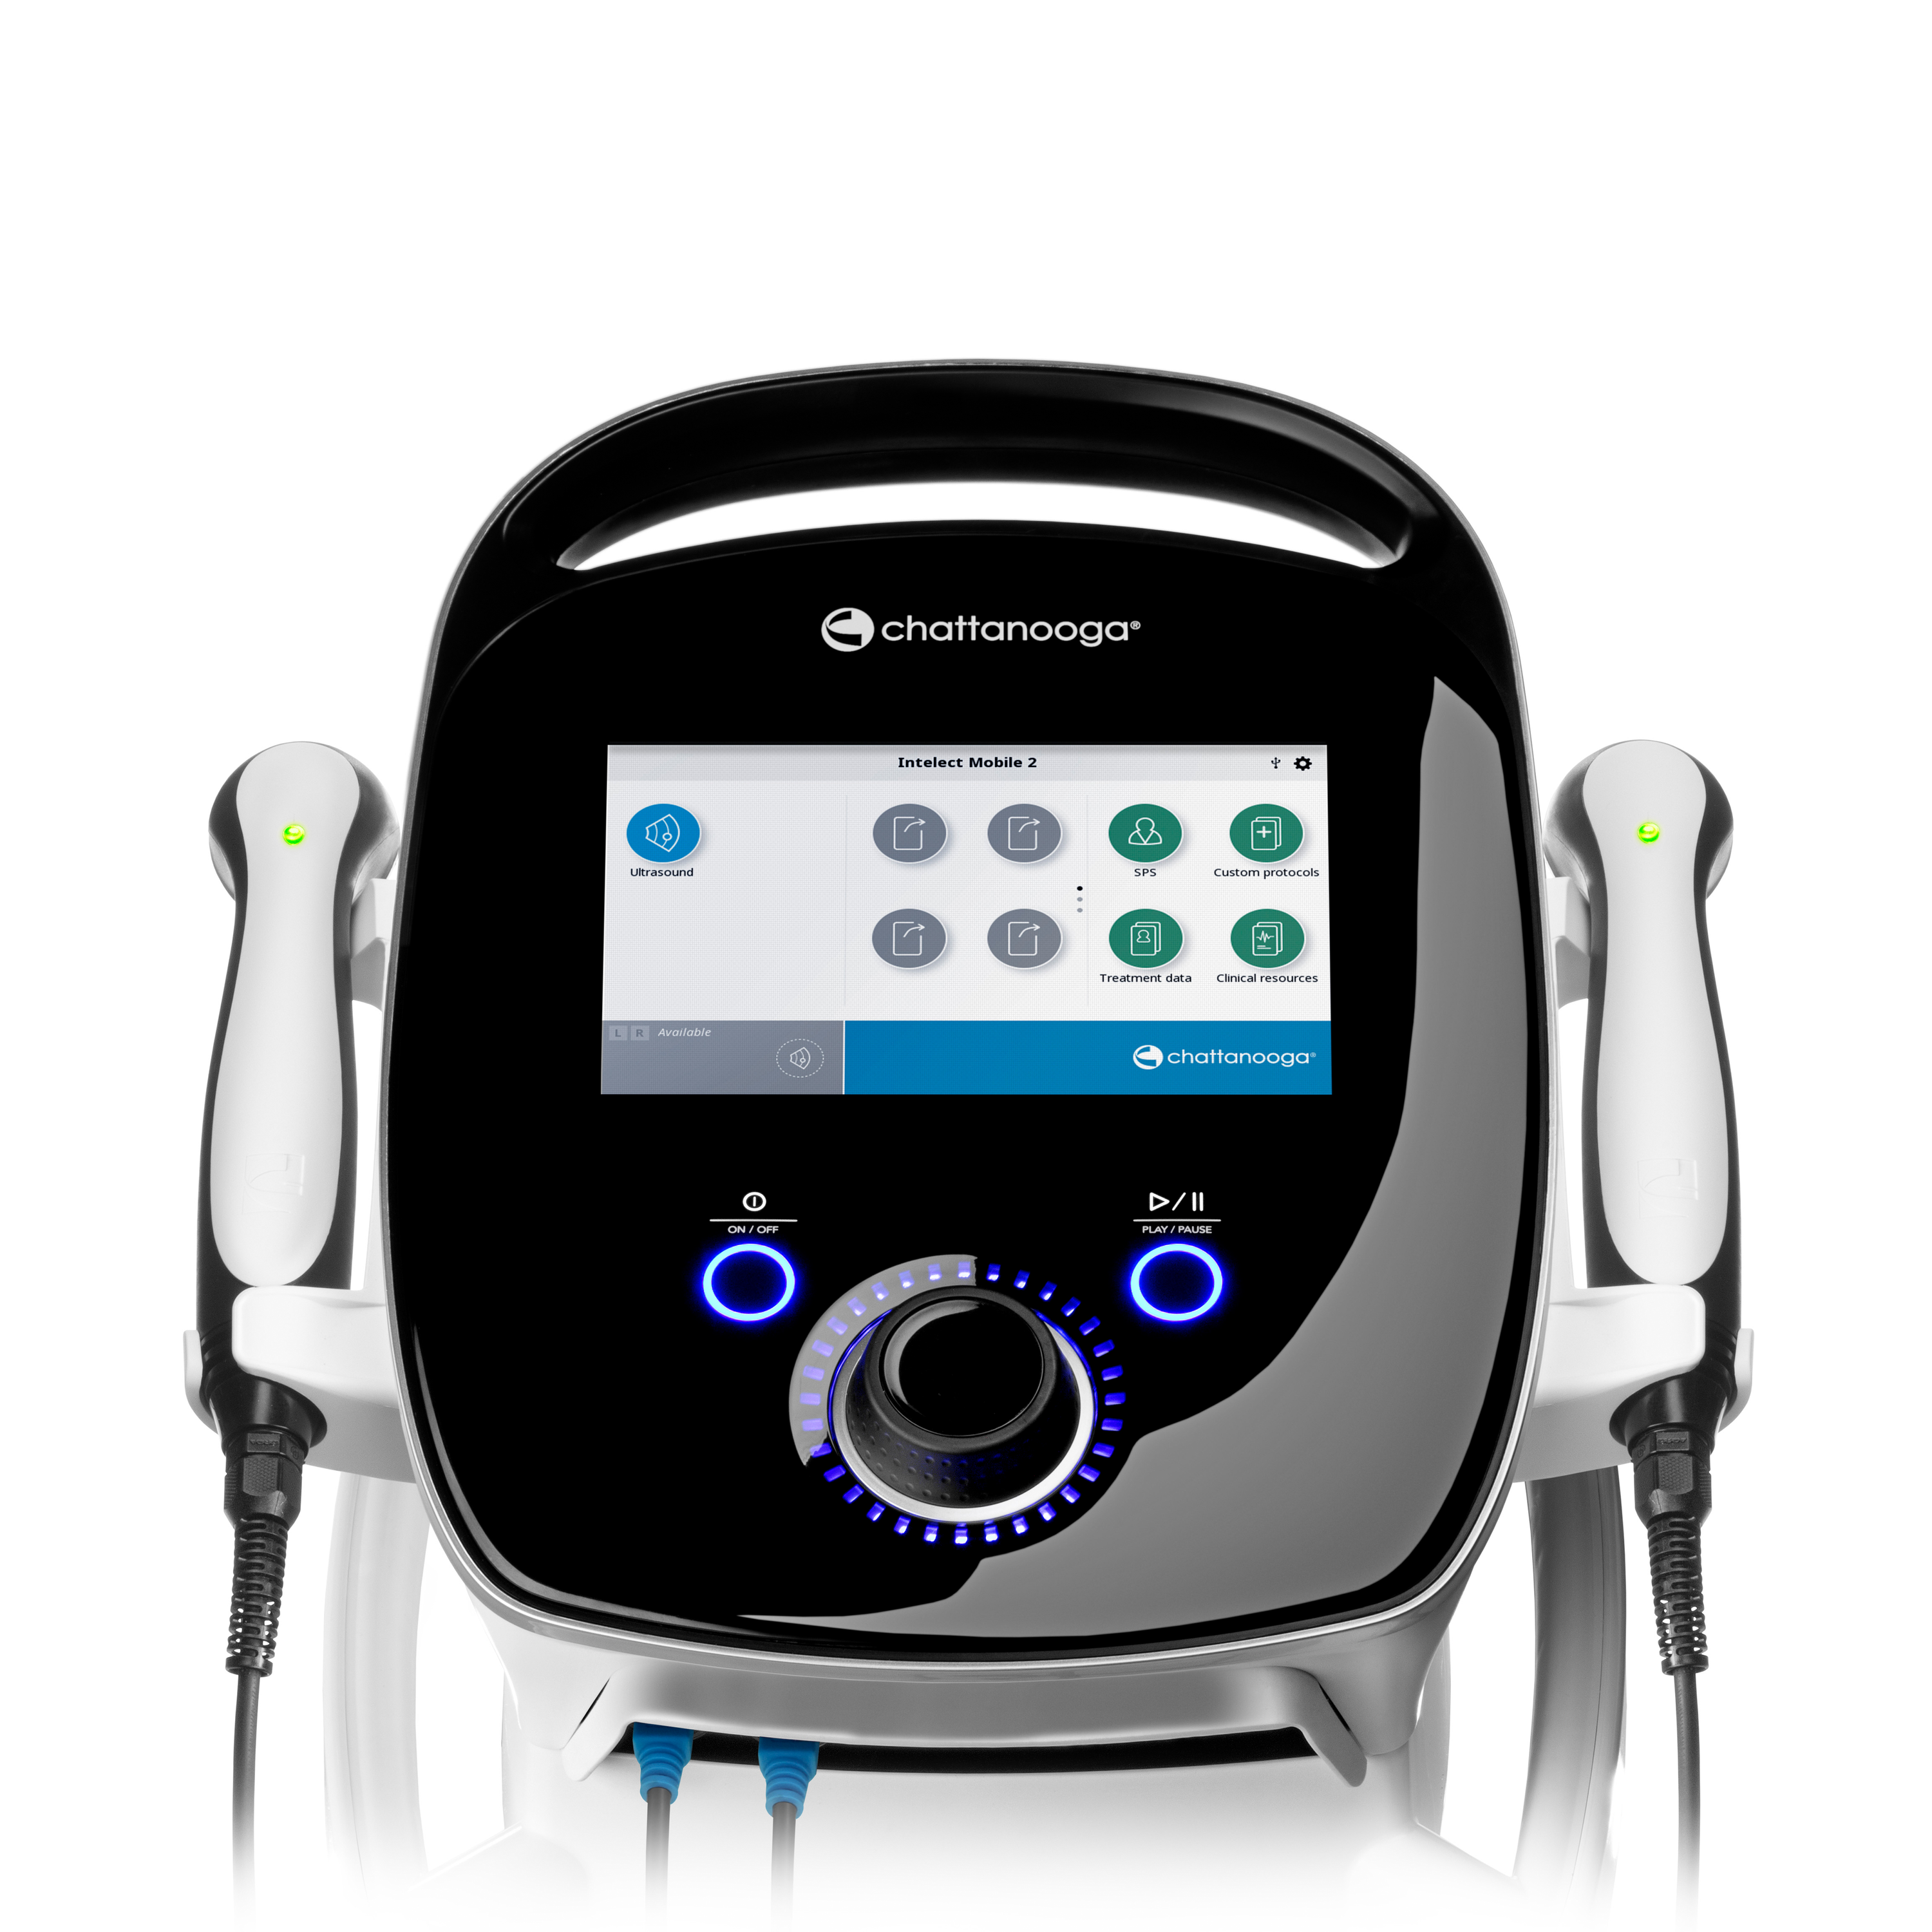 Zusatzbild CHATTANOOGA® Intelect® Mobile 2 Ultraschall Bildschirm, Mobile Ultraschalltherapie